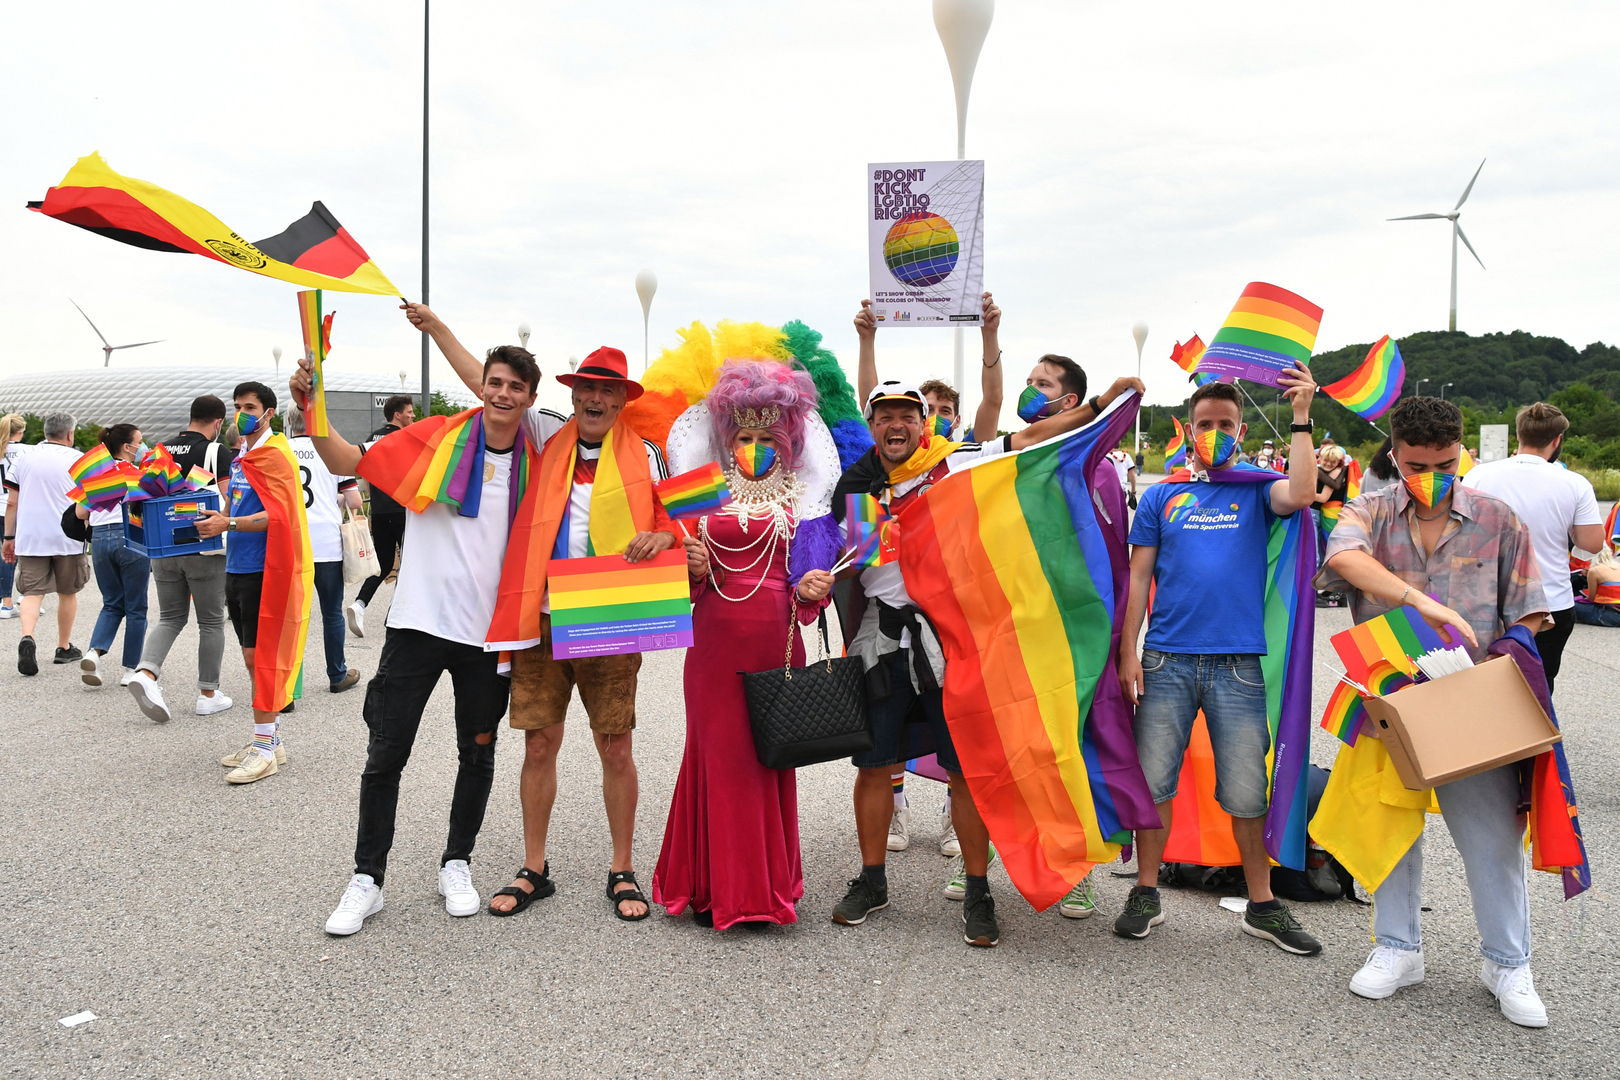 نجم منتخب بلجيكا يقف ضد قرار أقرته الحكومة لدعم المثليين